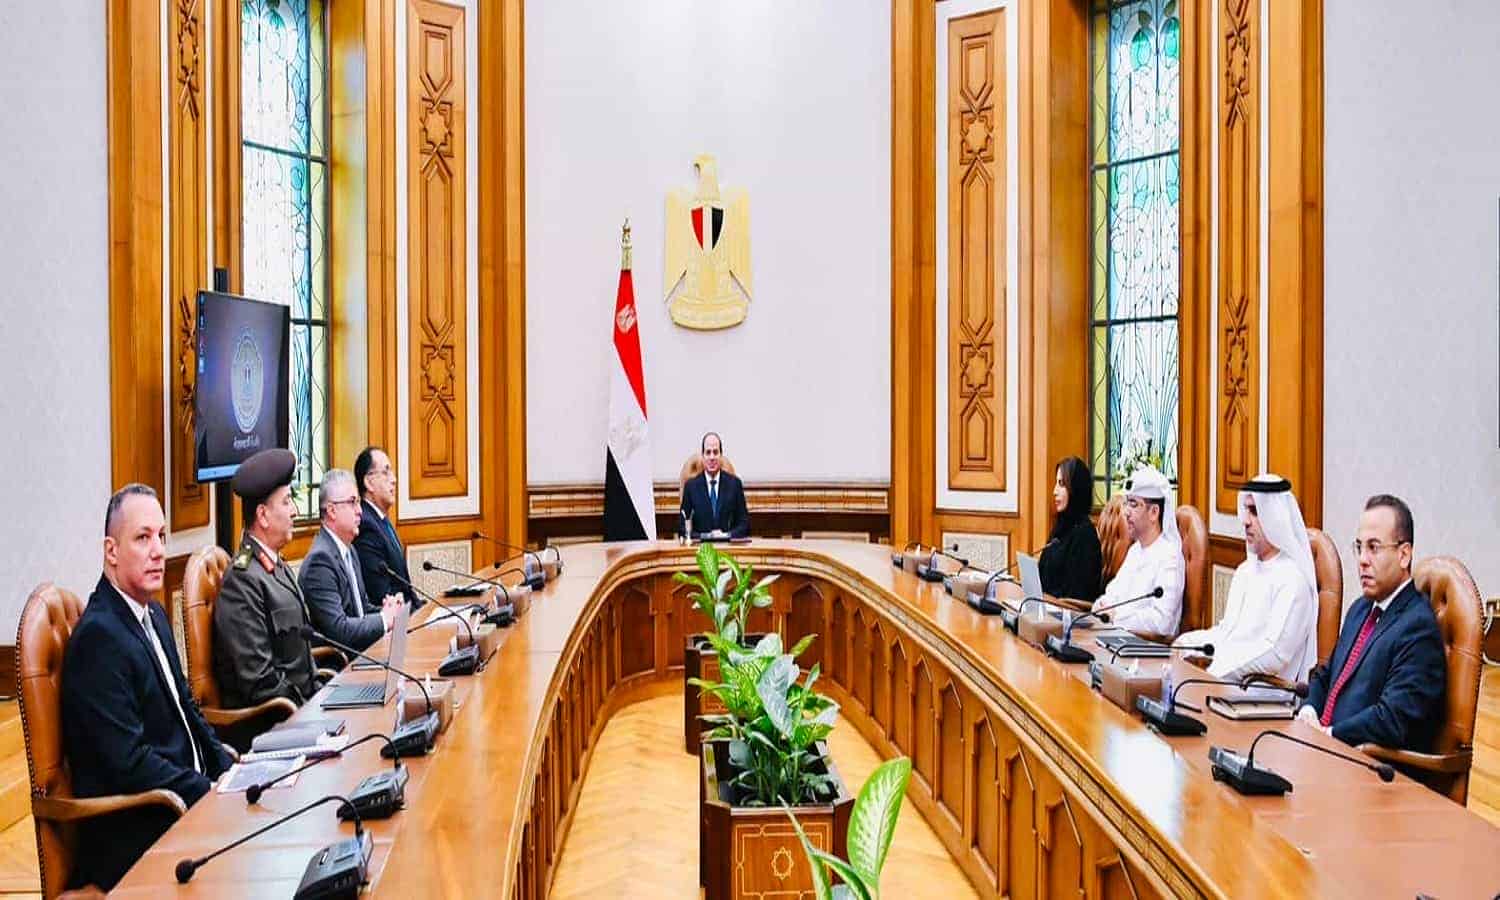  موانئ أبوظبي تطلع للتعاون مع مصر في تطوير المناطق اللوجستية والموانئ